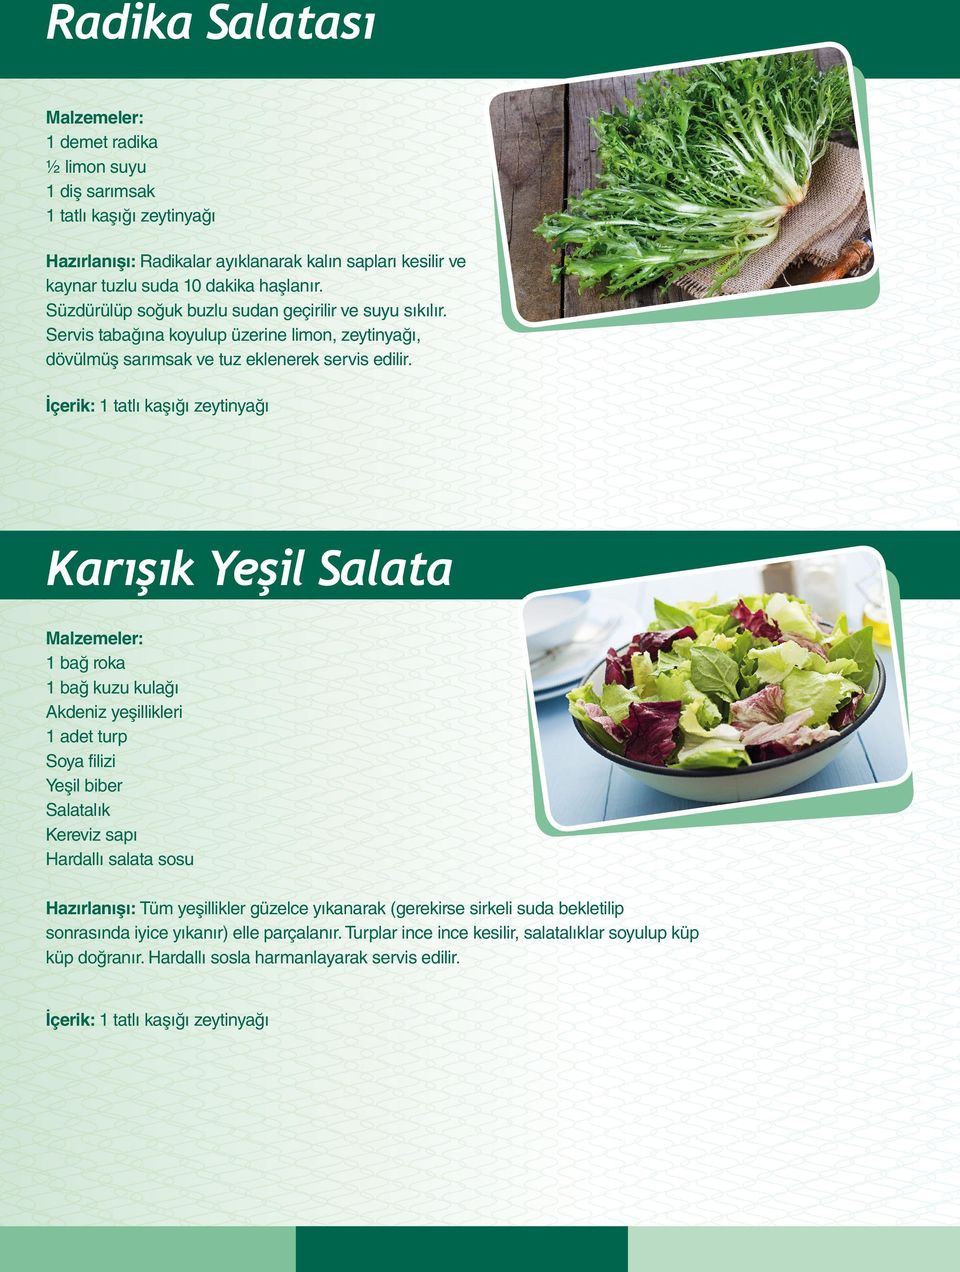 Karışık Yeşil Salata 1 bağ roka 1 bağ kuzu kulağı Akdeniz yeşillikleri 1 adet turp Soya filizi Yeşil biber Salatalık Kereviz sapı Hardallı salata sosu Hazırlanışı: Tüm